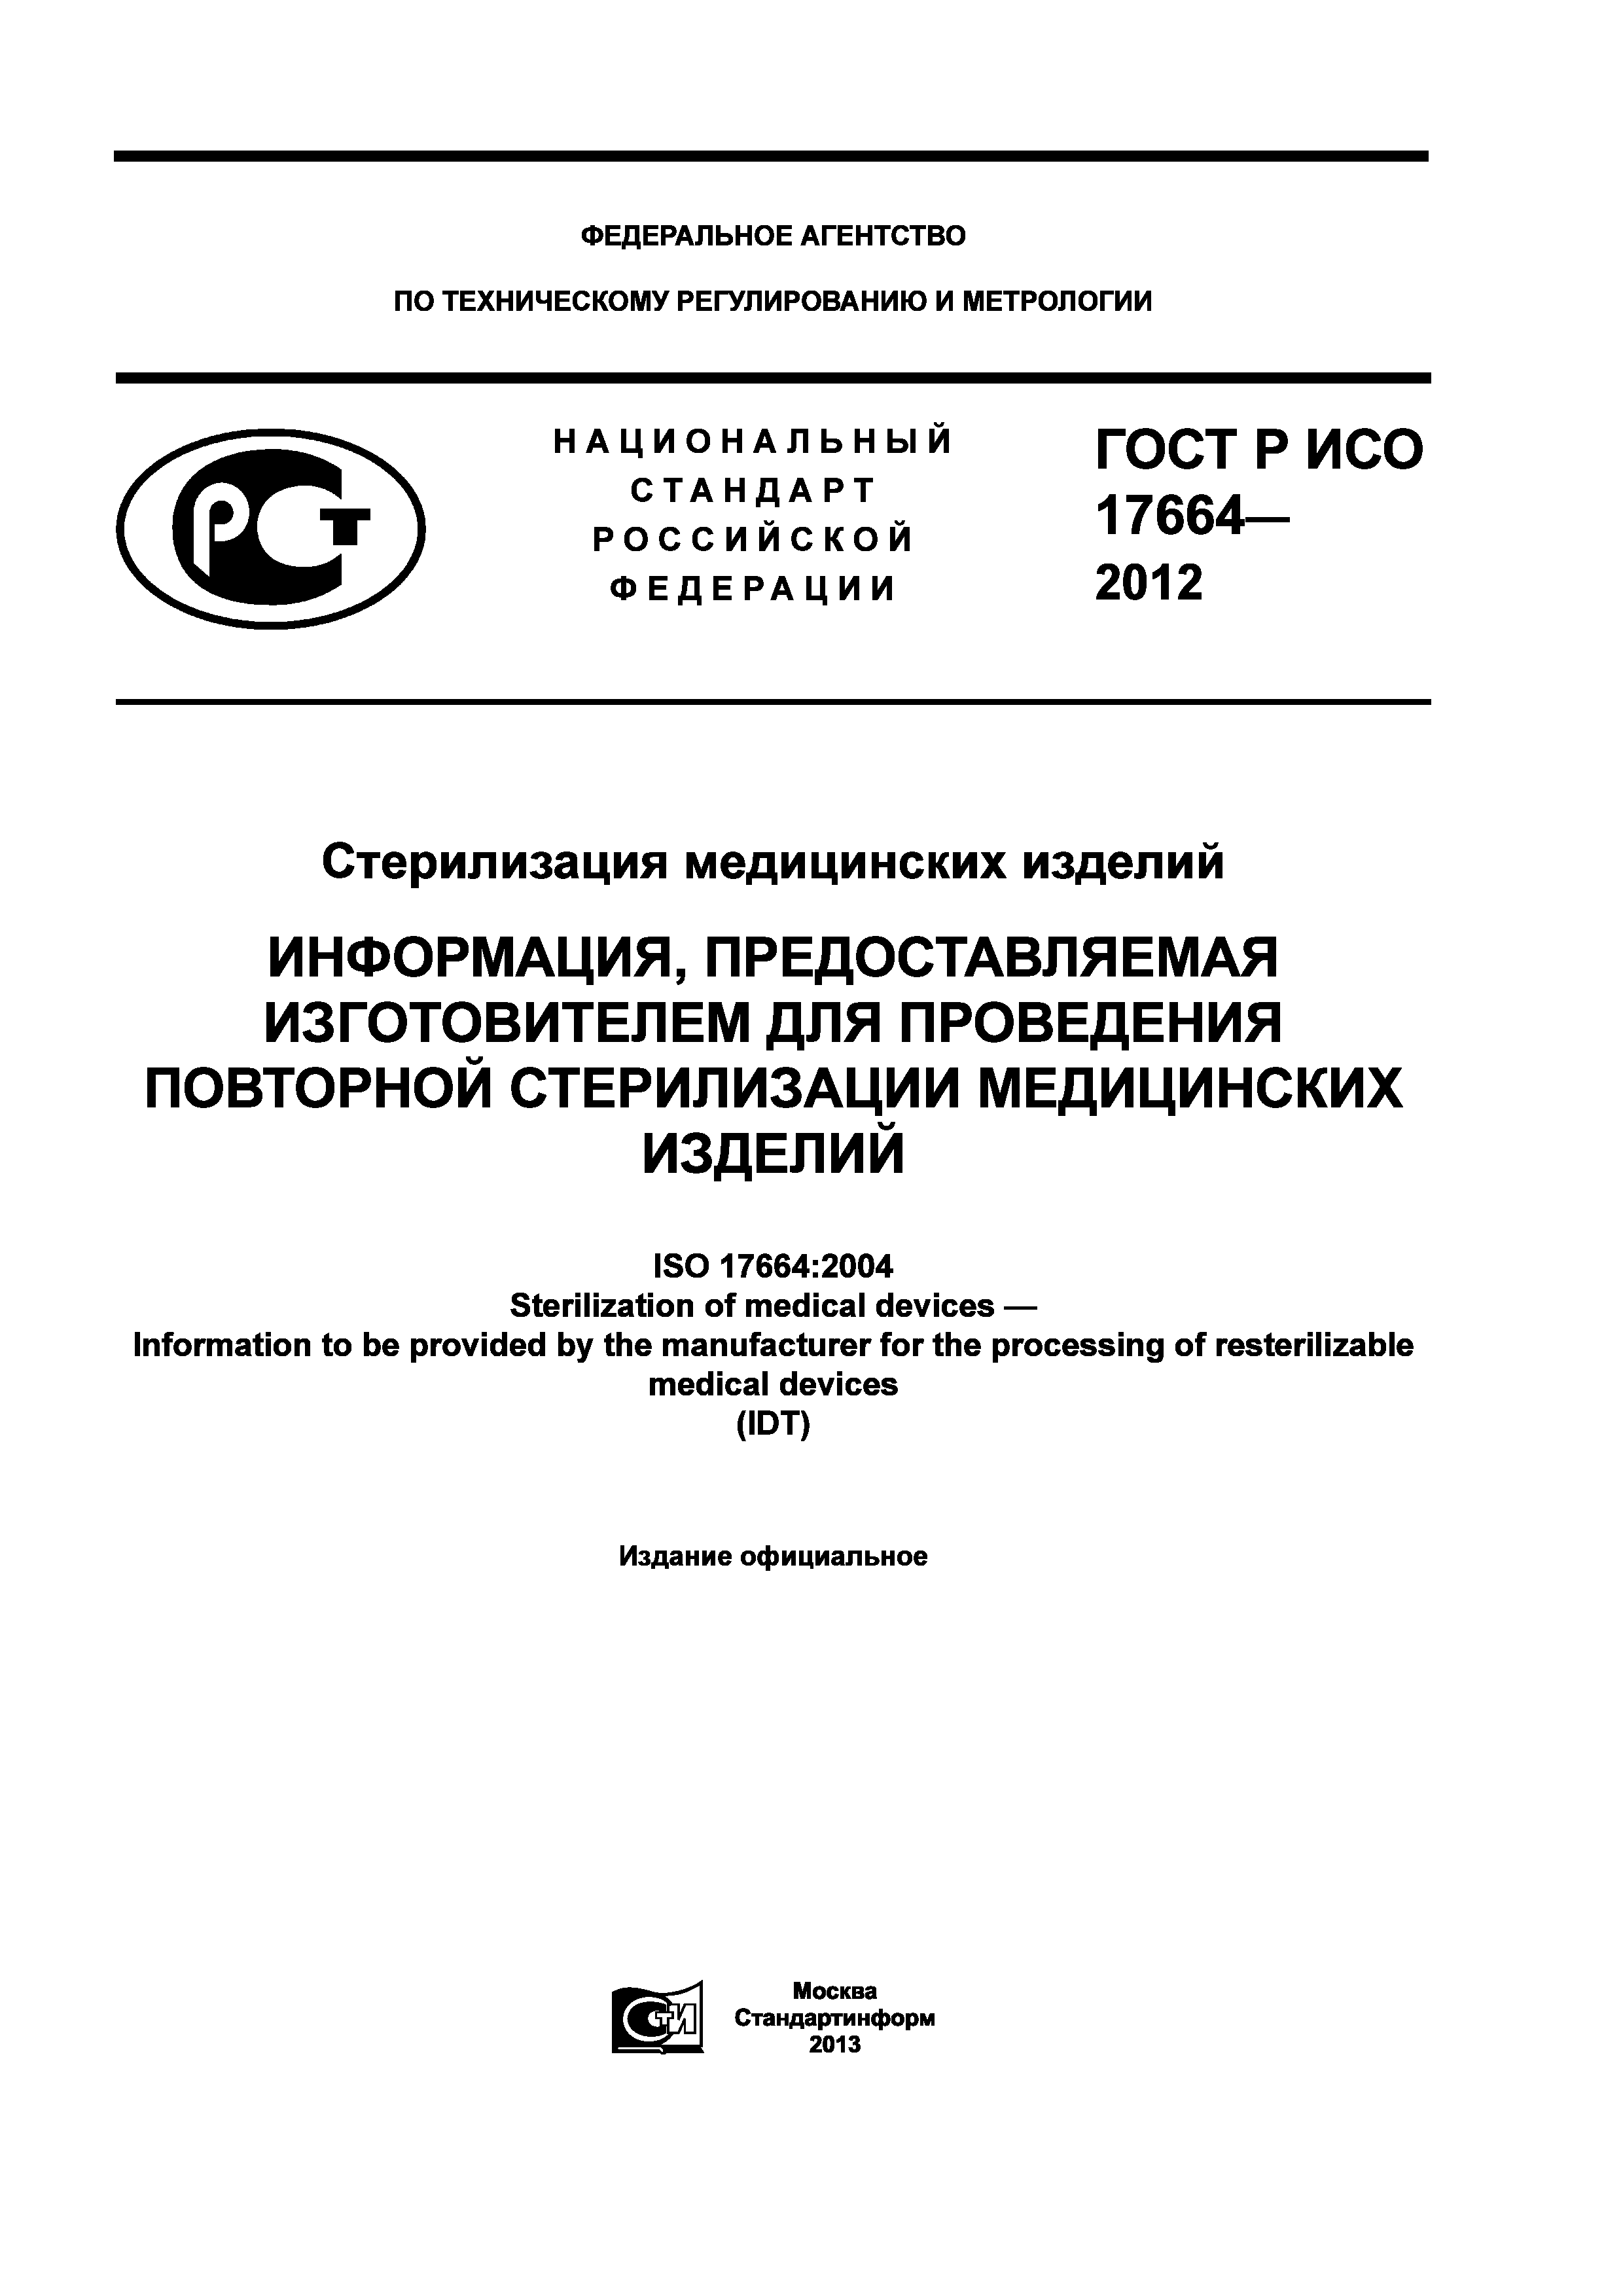 ГОСТ Р ИСО 17664-2012